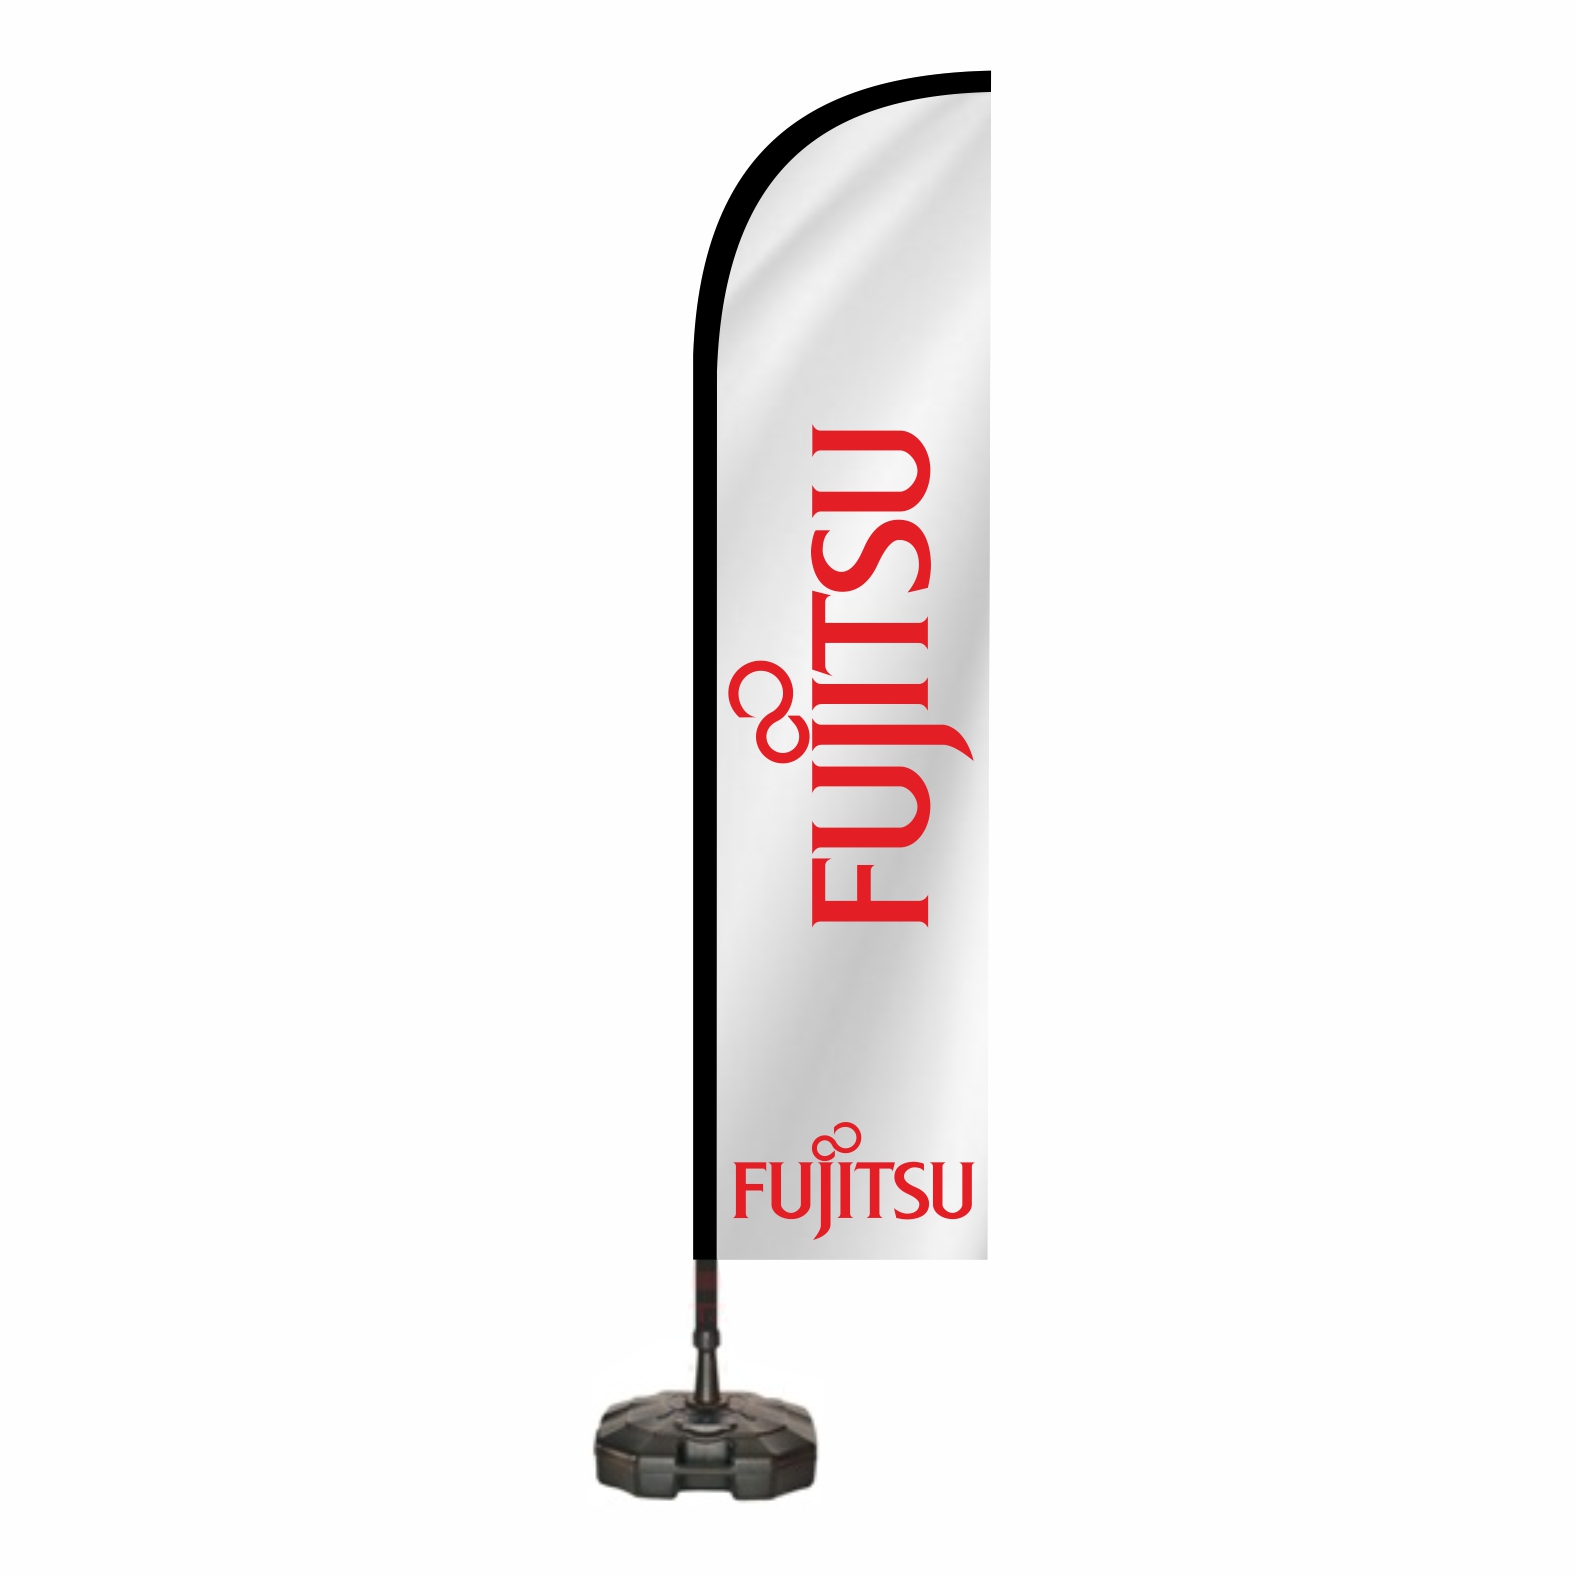 Fujitsu Oltal Bayra lleri